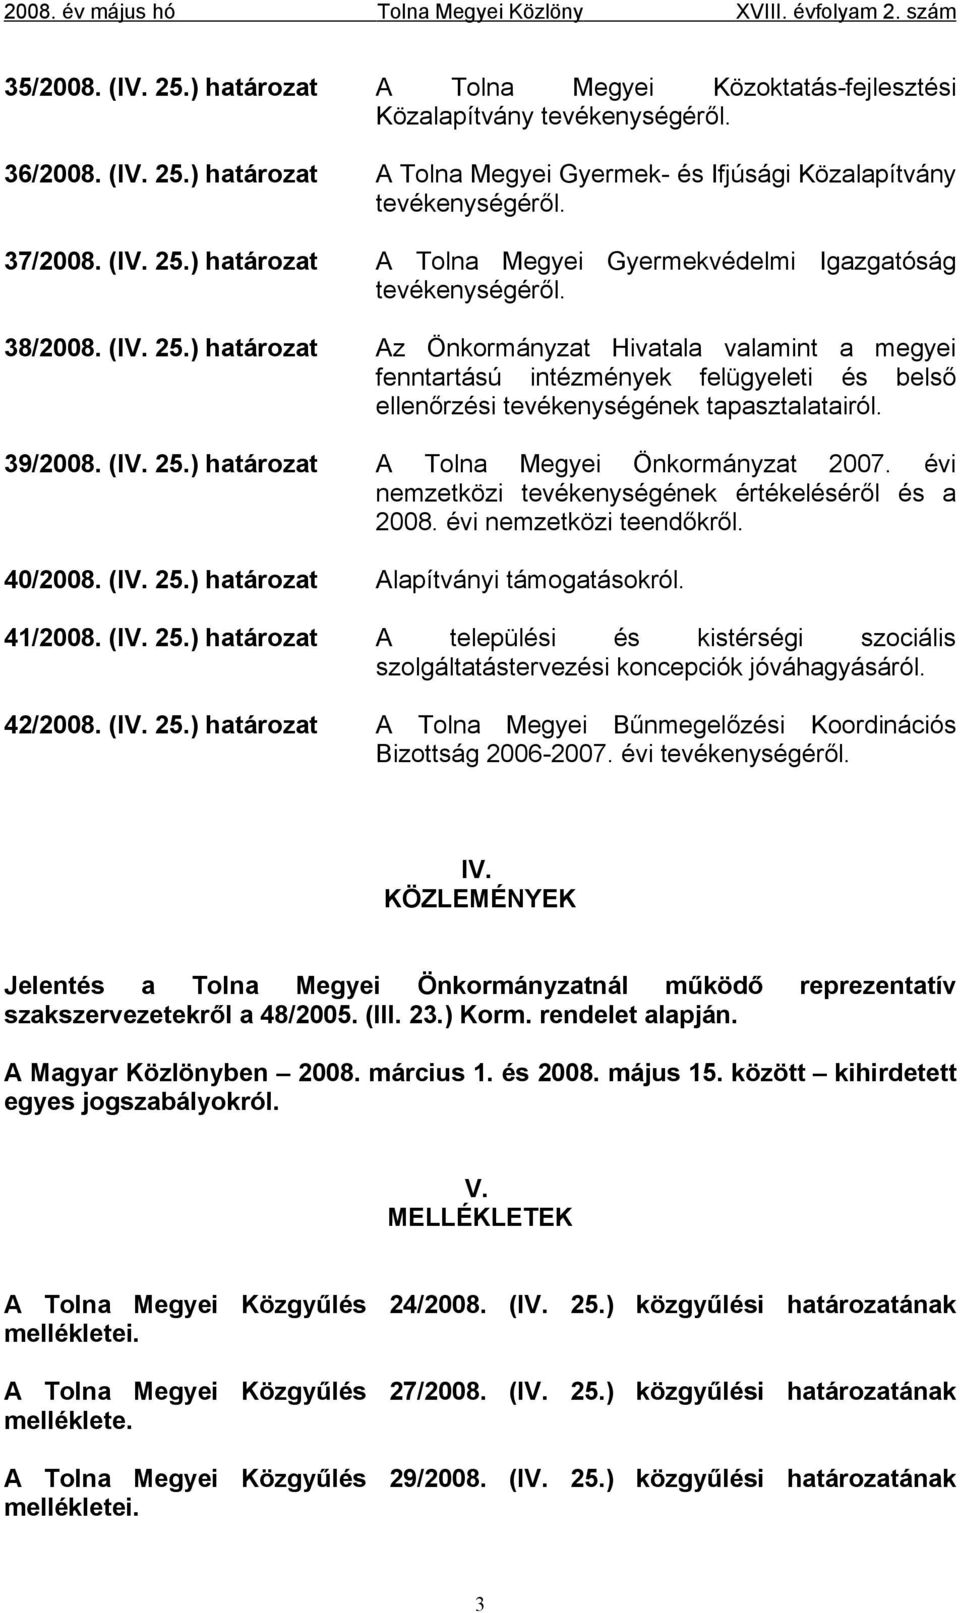 39/2008. (IV. 25.) határozat A Tolna Megyei Önkormányzat 2007. évi nemzetközi tevékenységének értékeléséről és a 2008. évi nemzetközi teendőkről. 40/2008. (IV. 25.) határozat Alapítványi támogatásokról.